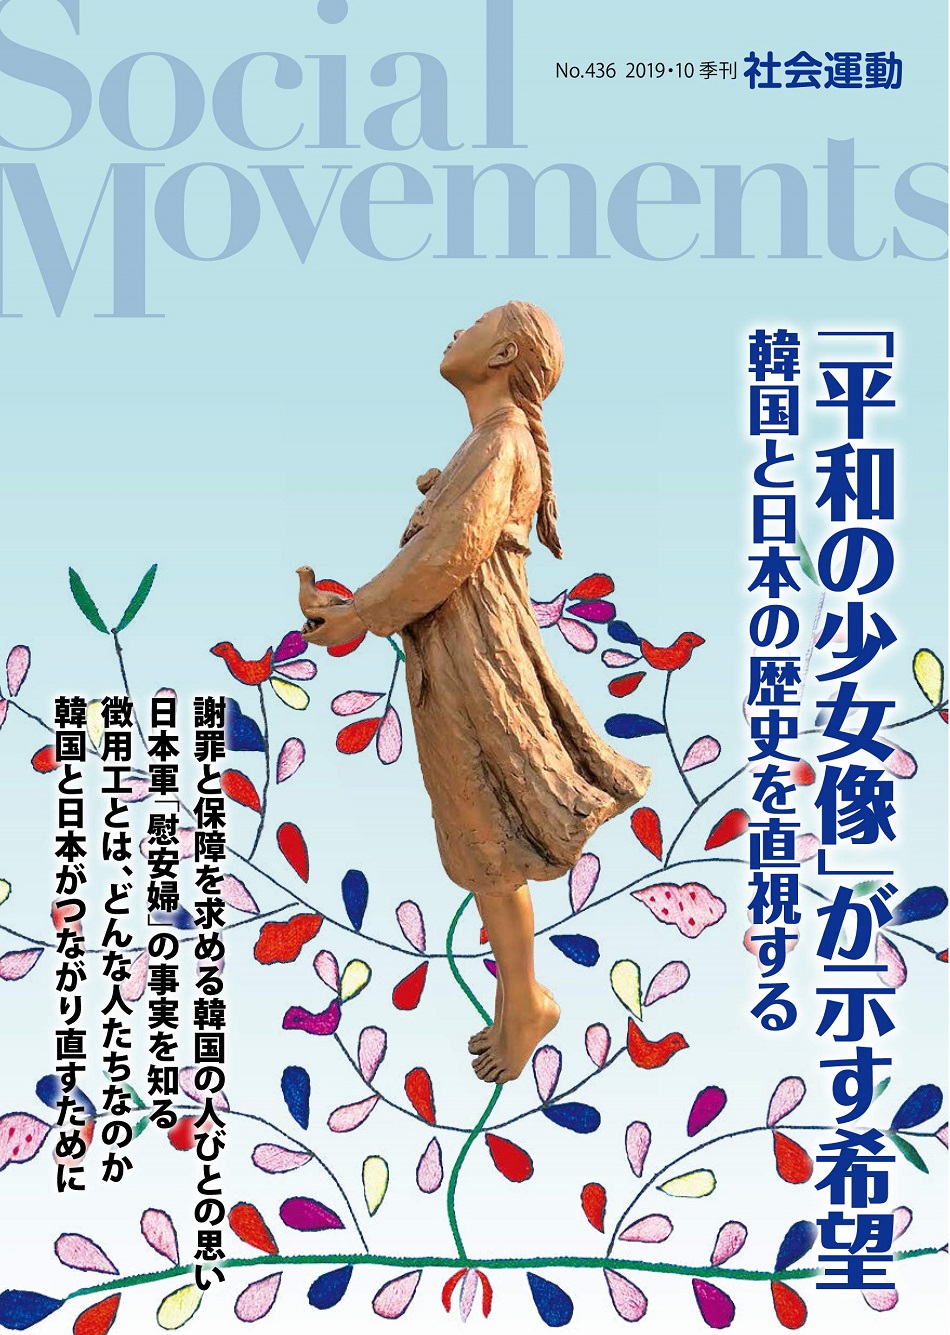 季刊『社会運動』2019年10月号【436号】特集:「平和の少女像」が示す希望 韓国と日本の歴史を直視する